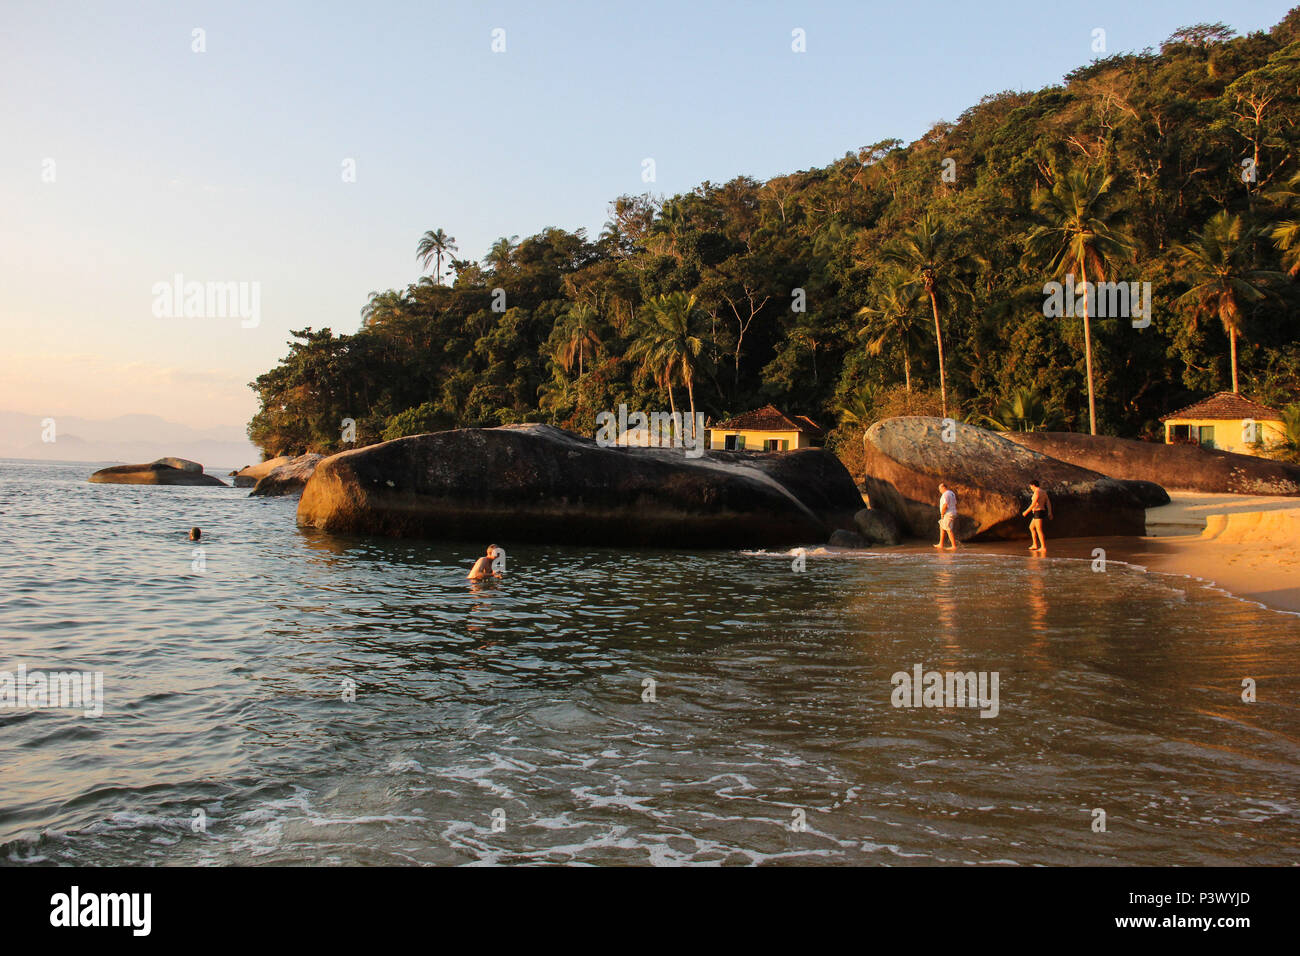 Belezas naturais da enseada de Araçatiba, na Ilha Grande, Angra dos Reis. O local é acessível por barco e fica a aproximadamente 1 hora de navegação partindo do Centro de Angra. Stock Photo